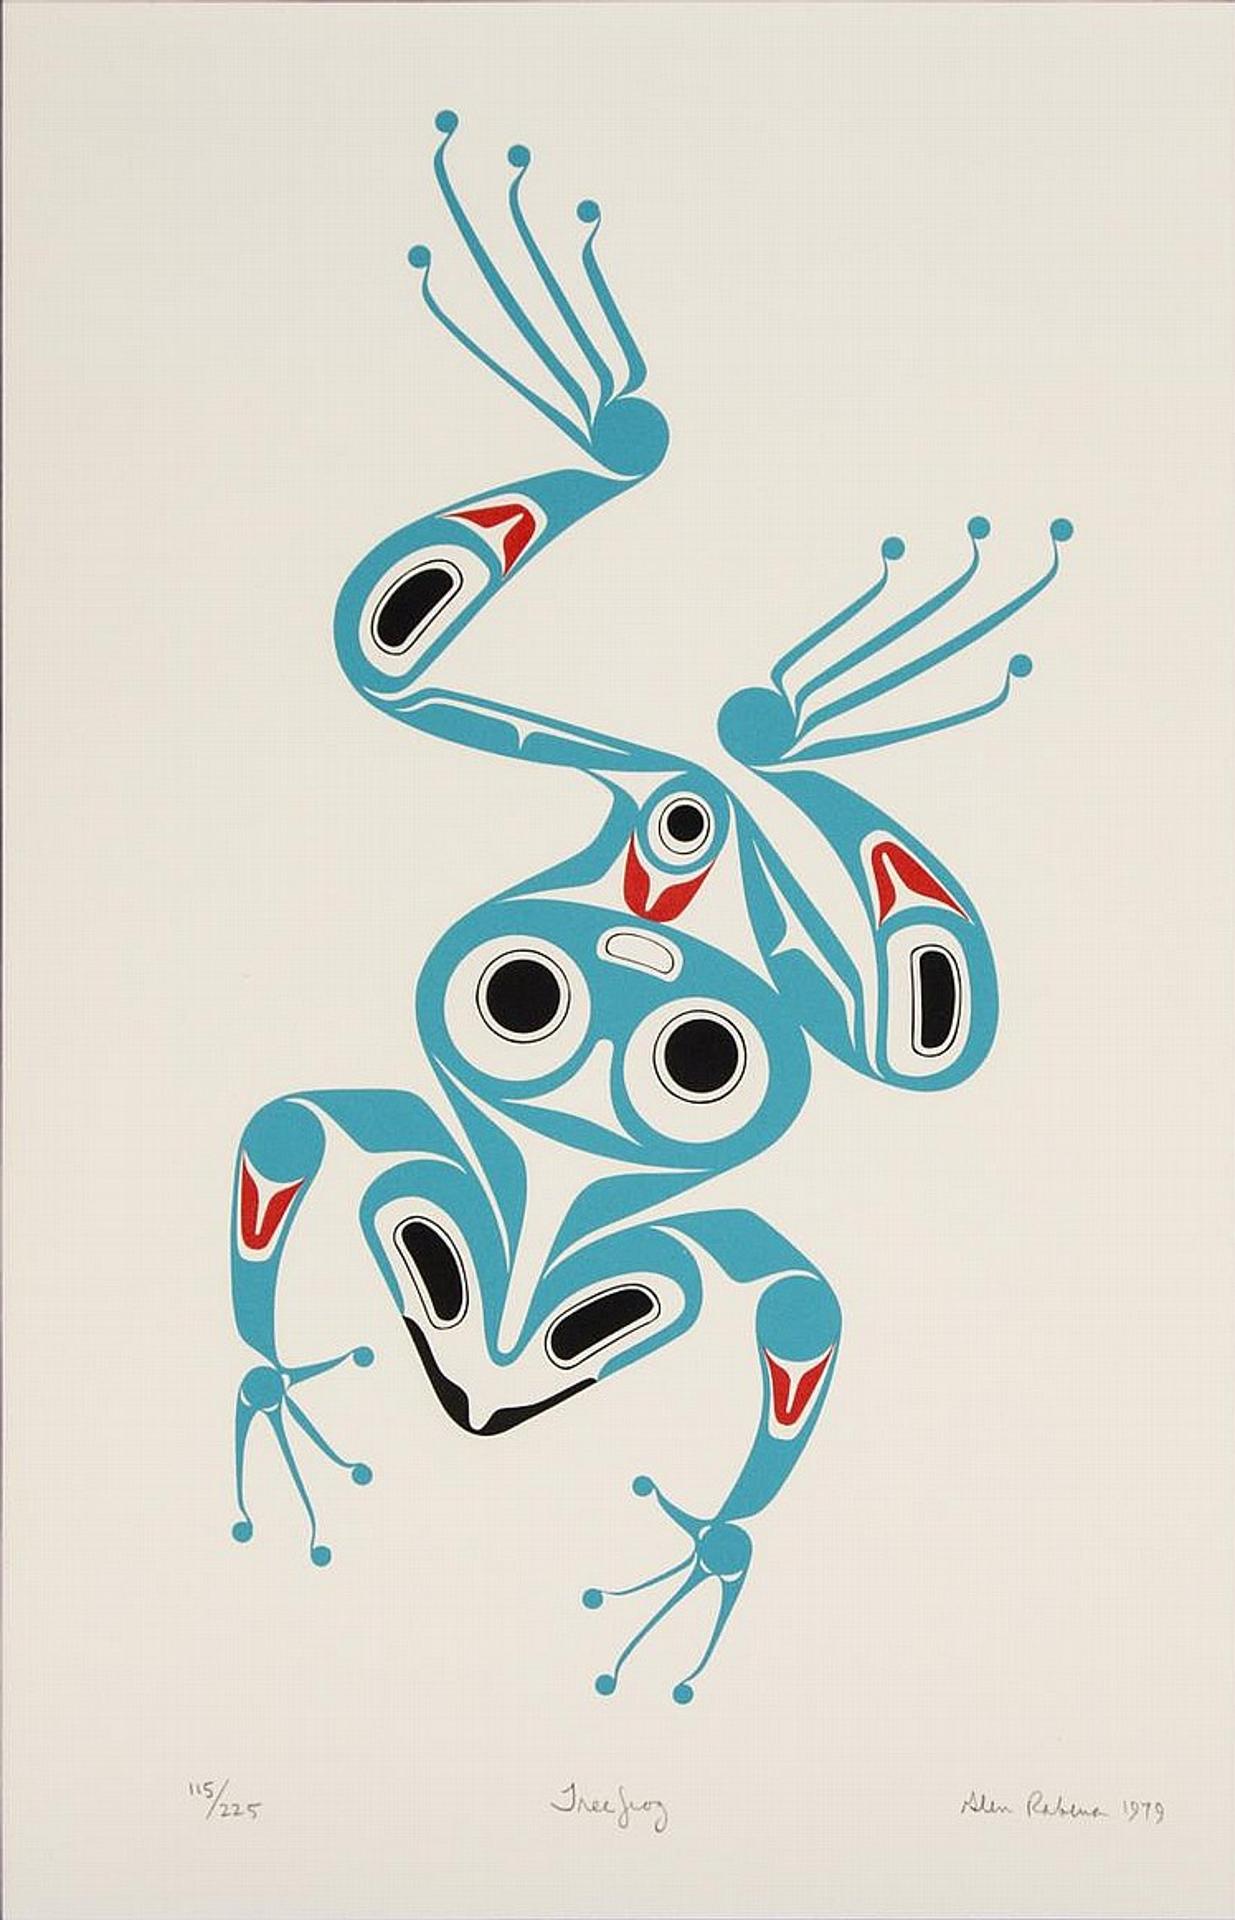 Glen Rabena (1953) - Tree Frog